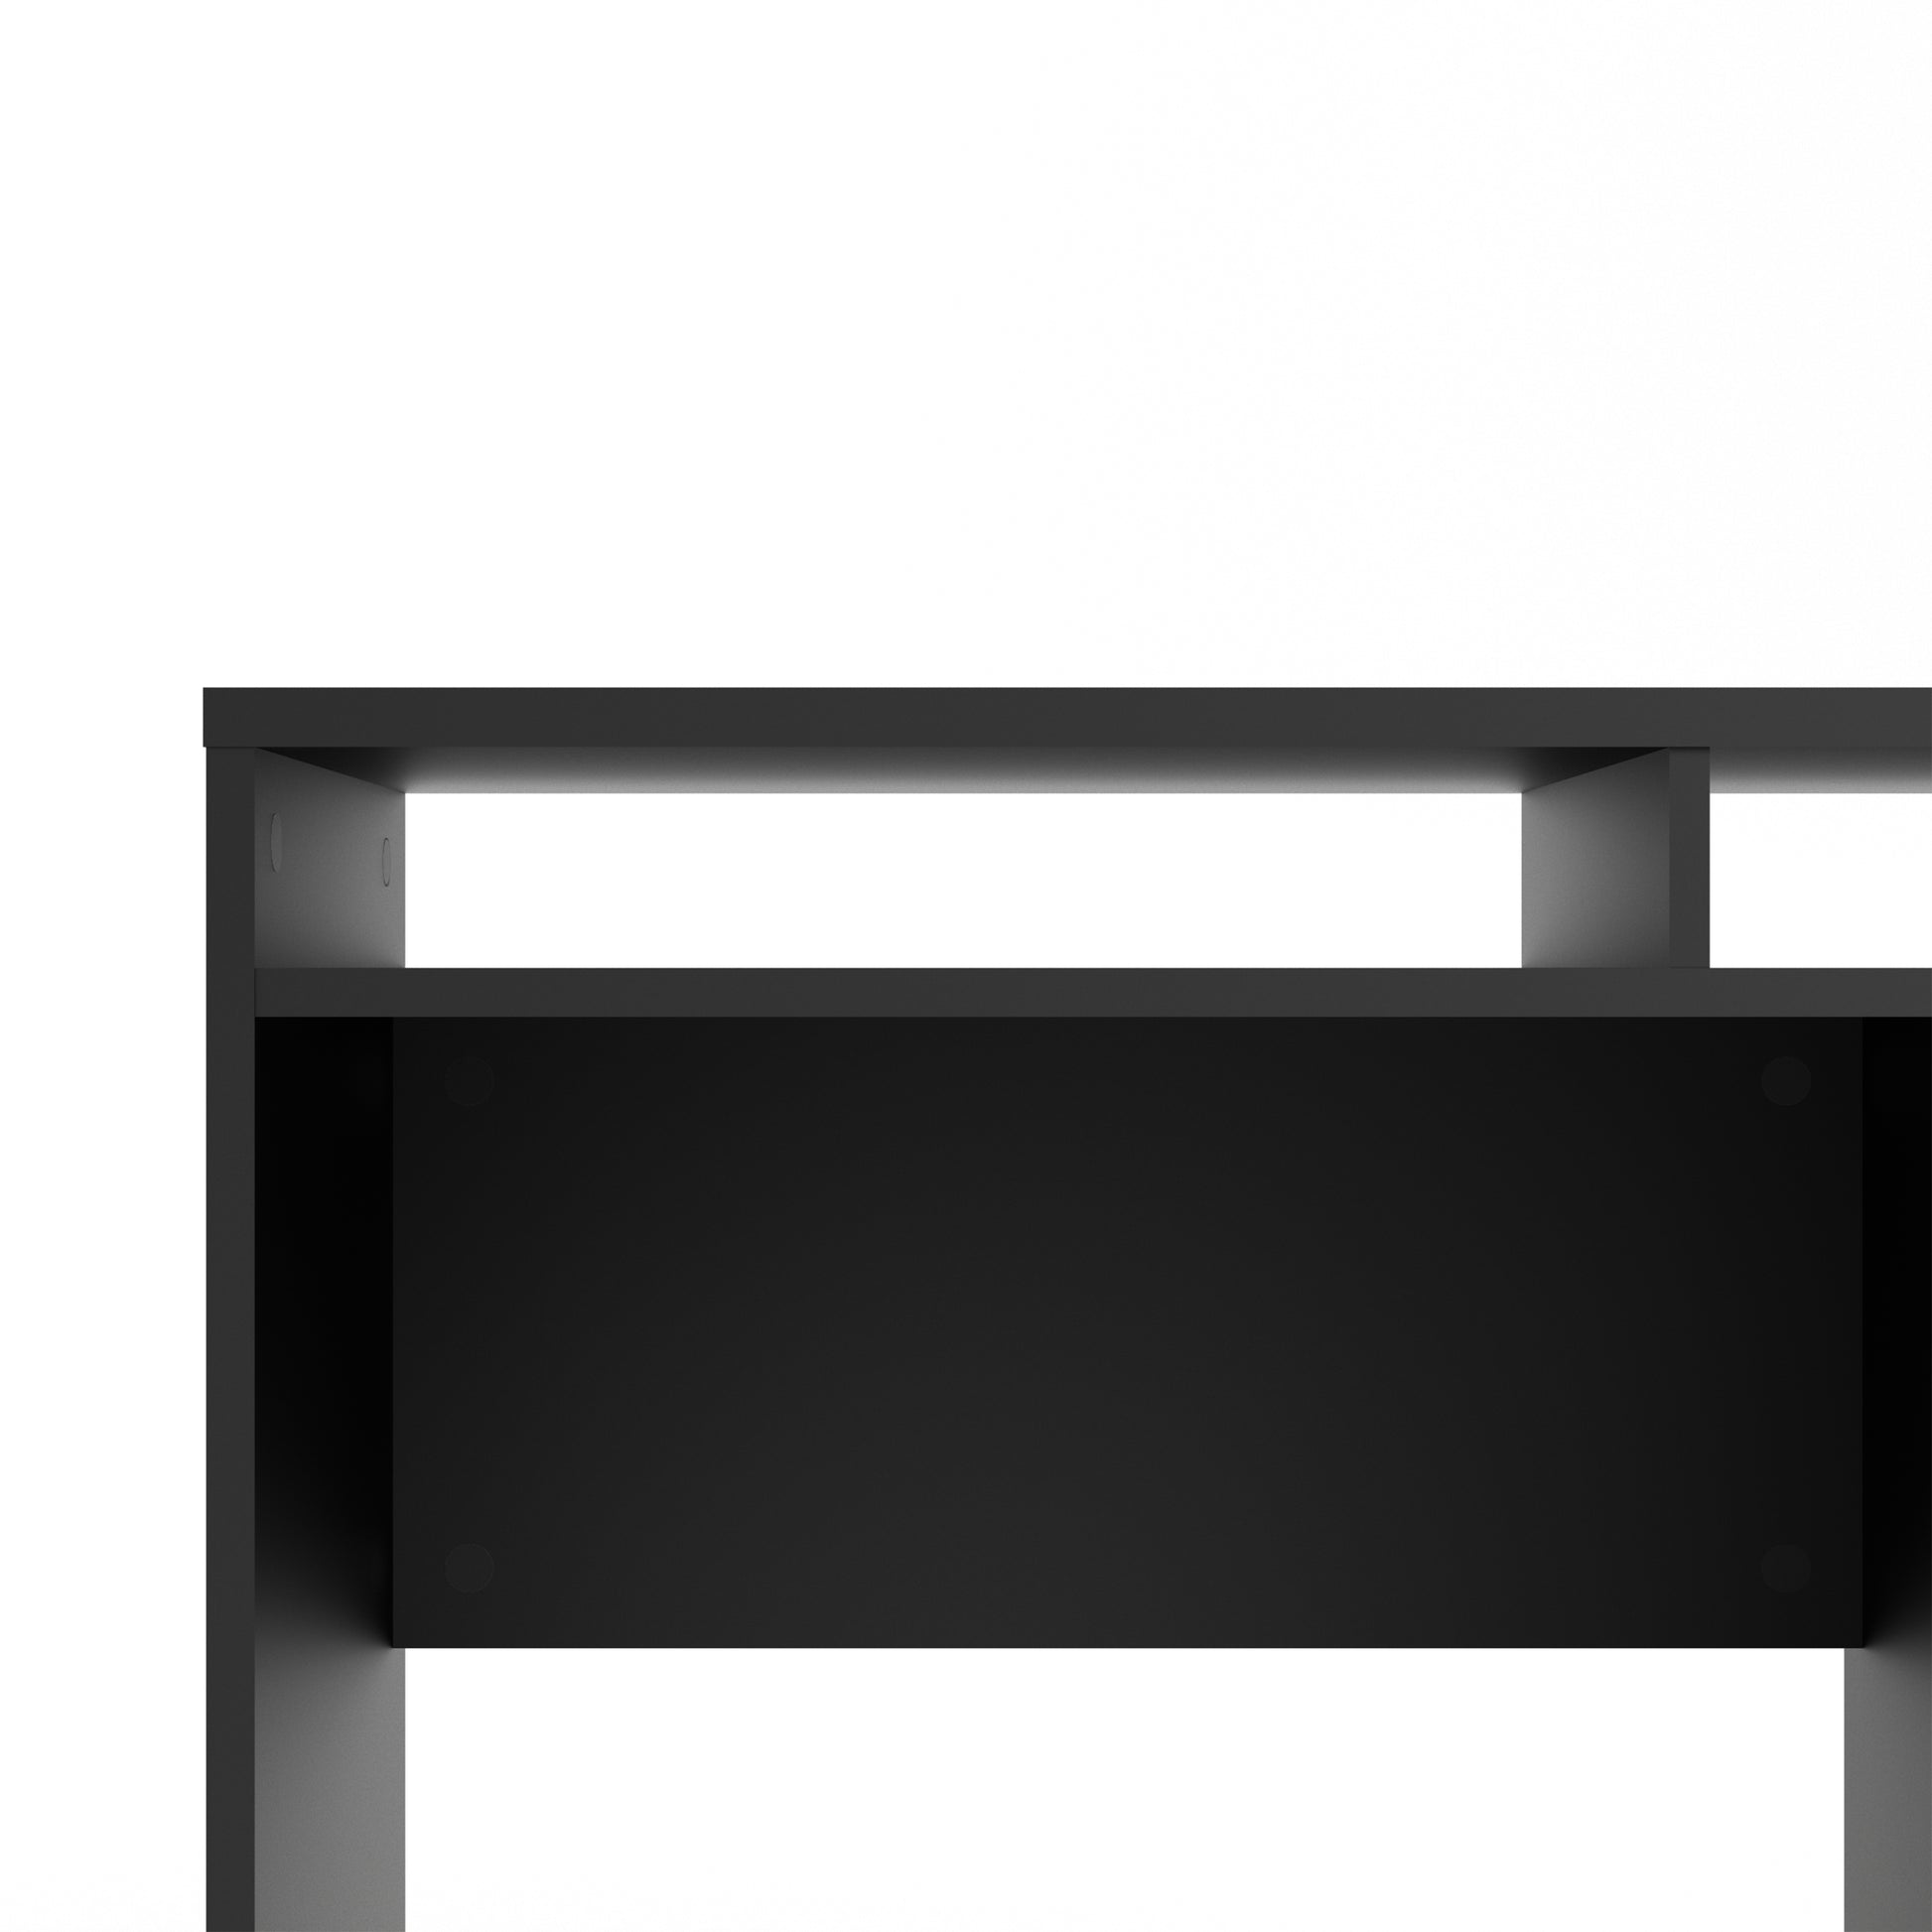 Function Plus  Desk 1 Door 1 Drawer in Black